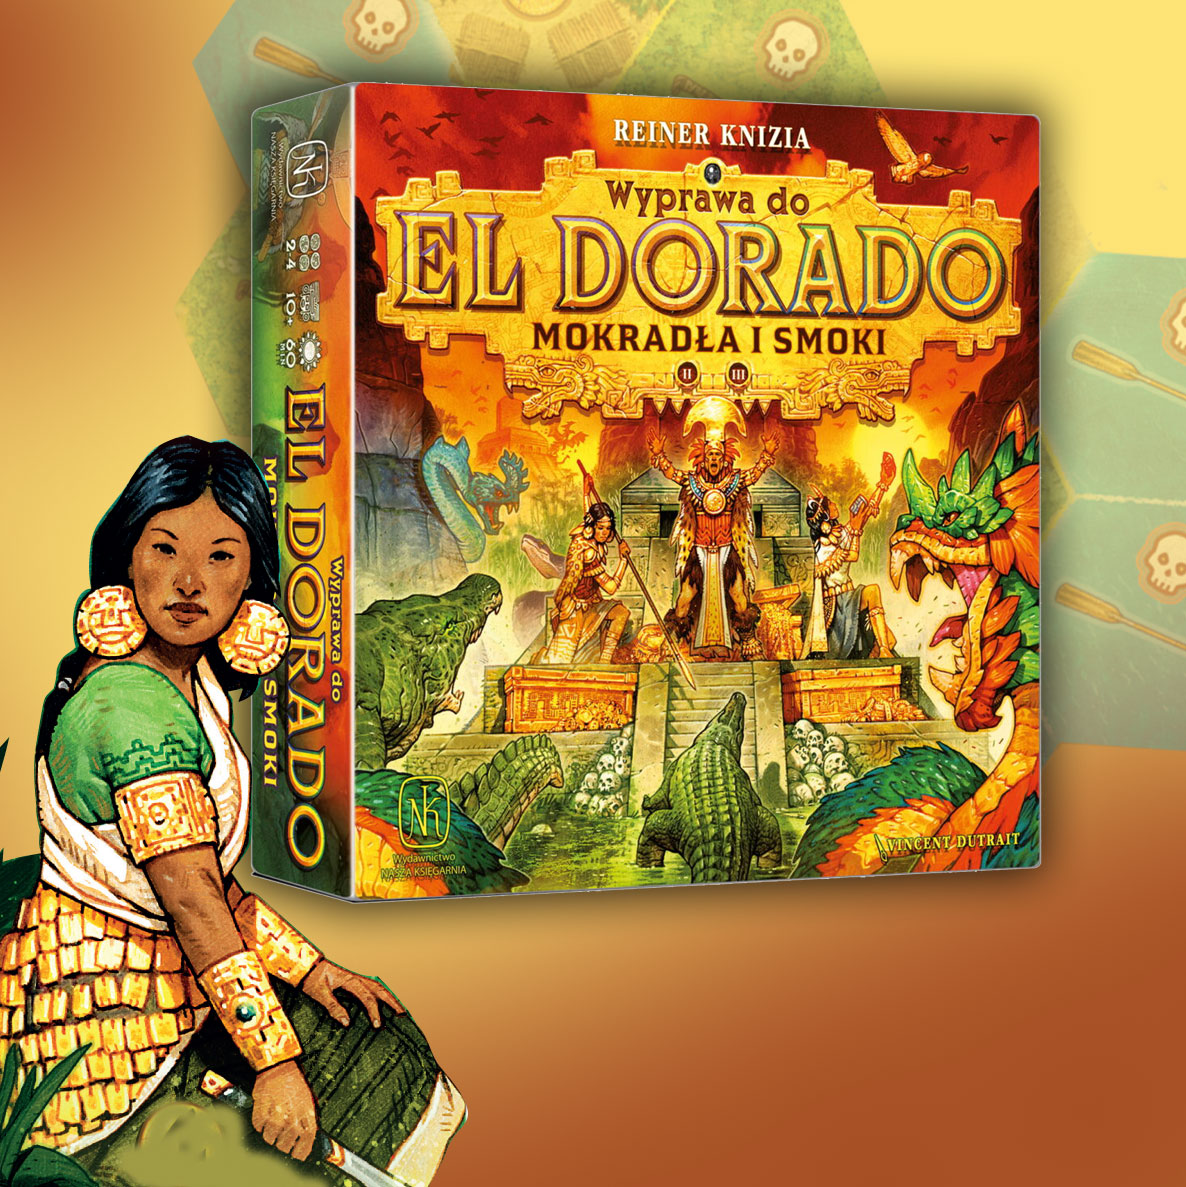 Dodatek do gry "Wyprawa do El Dorado" pt. "Mokradła i smoki"